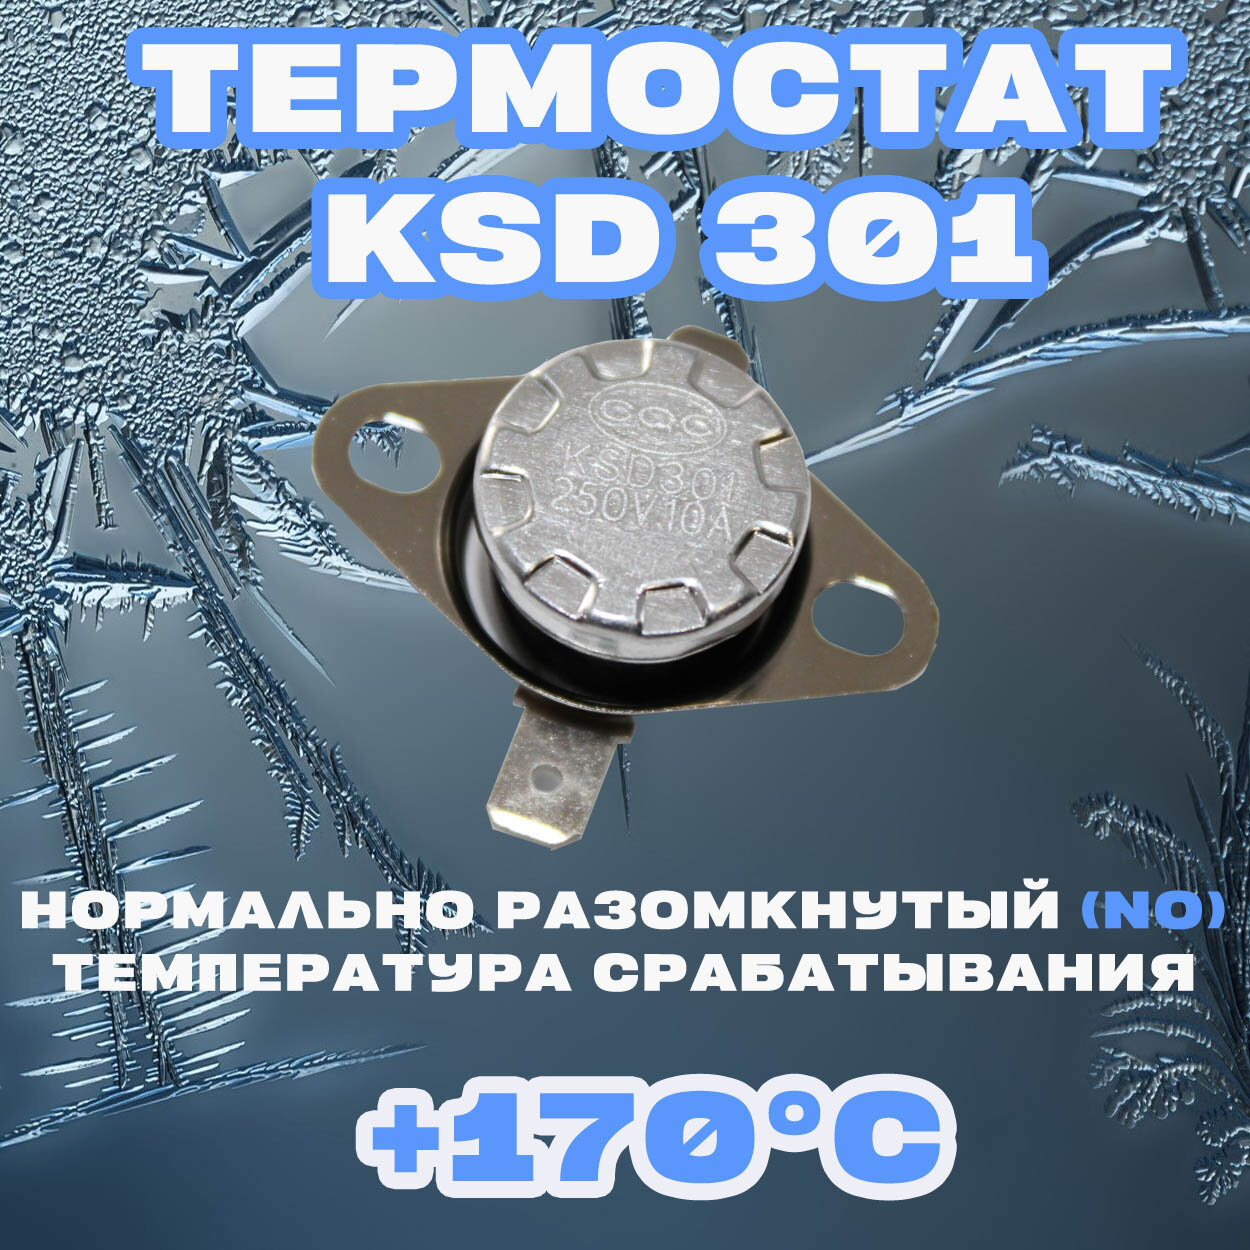 Термостат Нормально разомкнутый (NO) KSD 301 170C 250В 10A Для нагревательного и холодильного оборудования